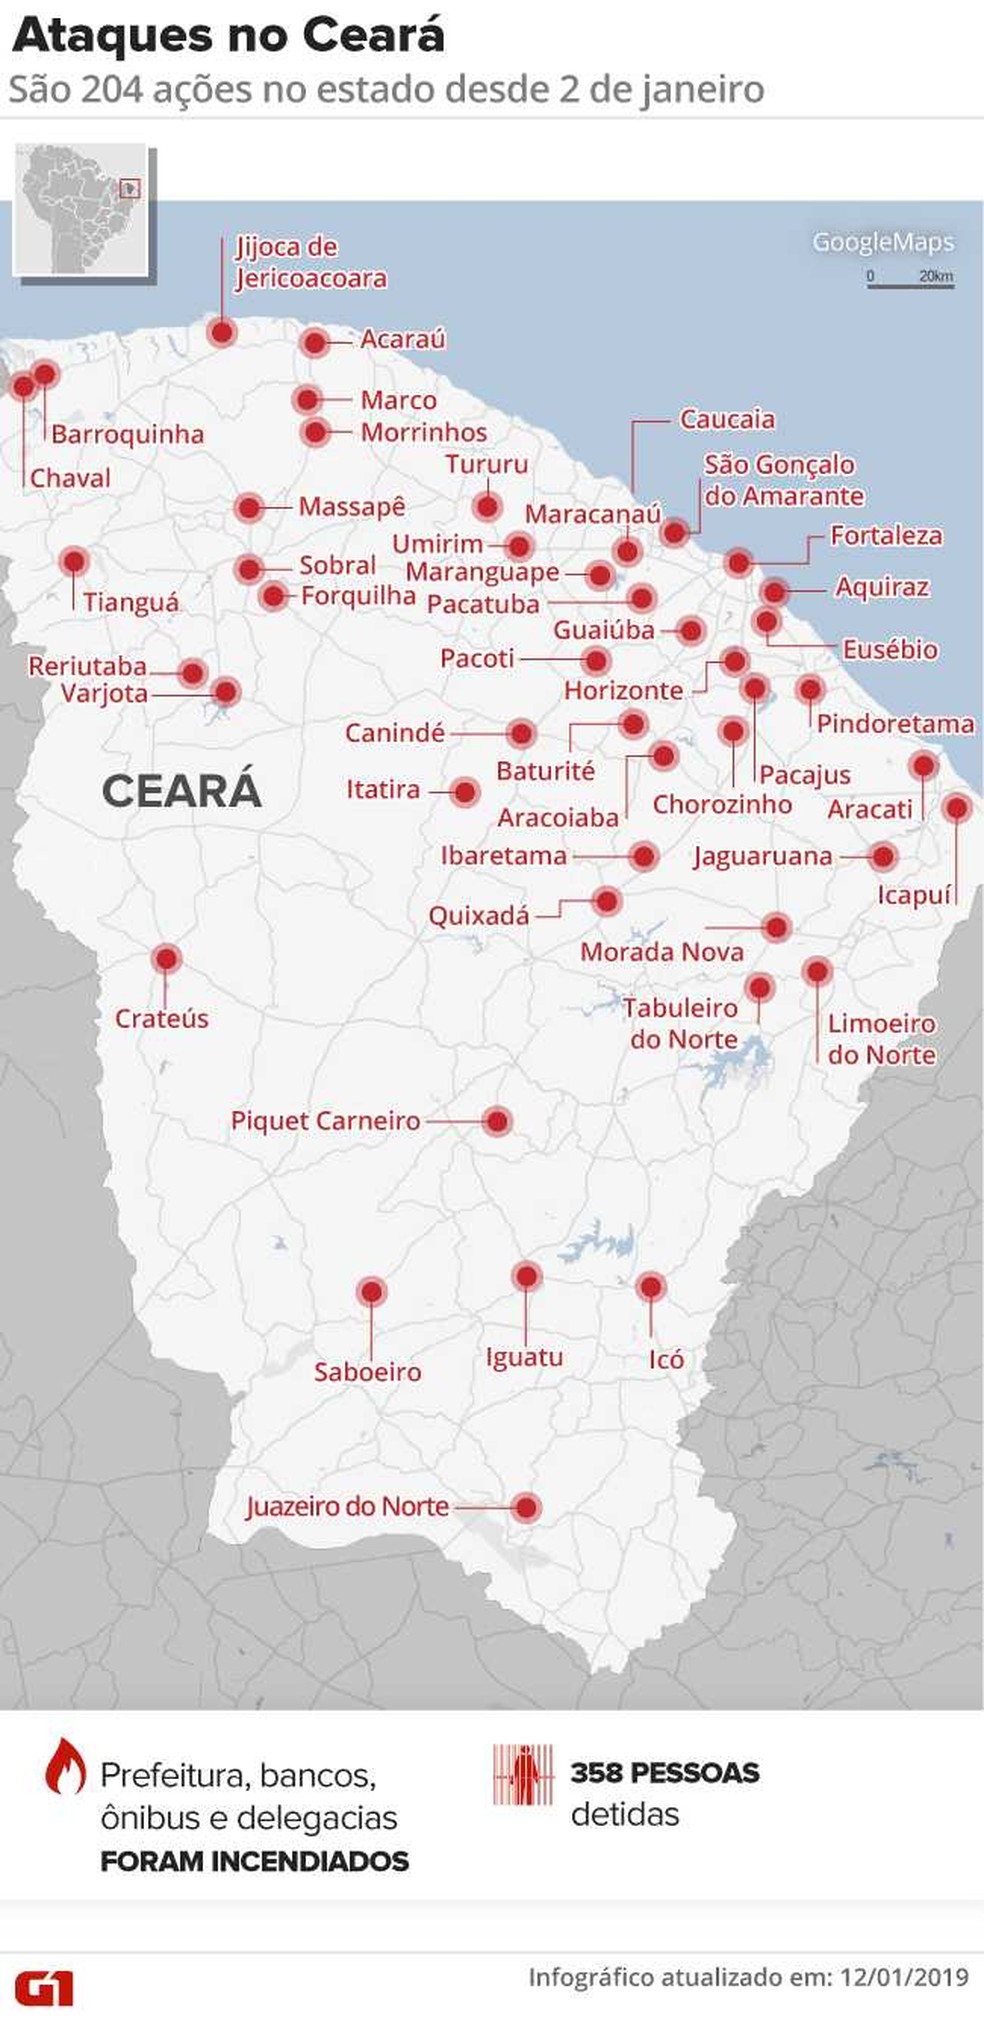 Ceará vive onda de violência desde 2 de janeiro, com mais de 200 ataques — Foto: Arte G1